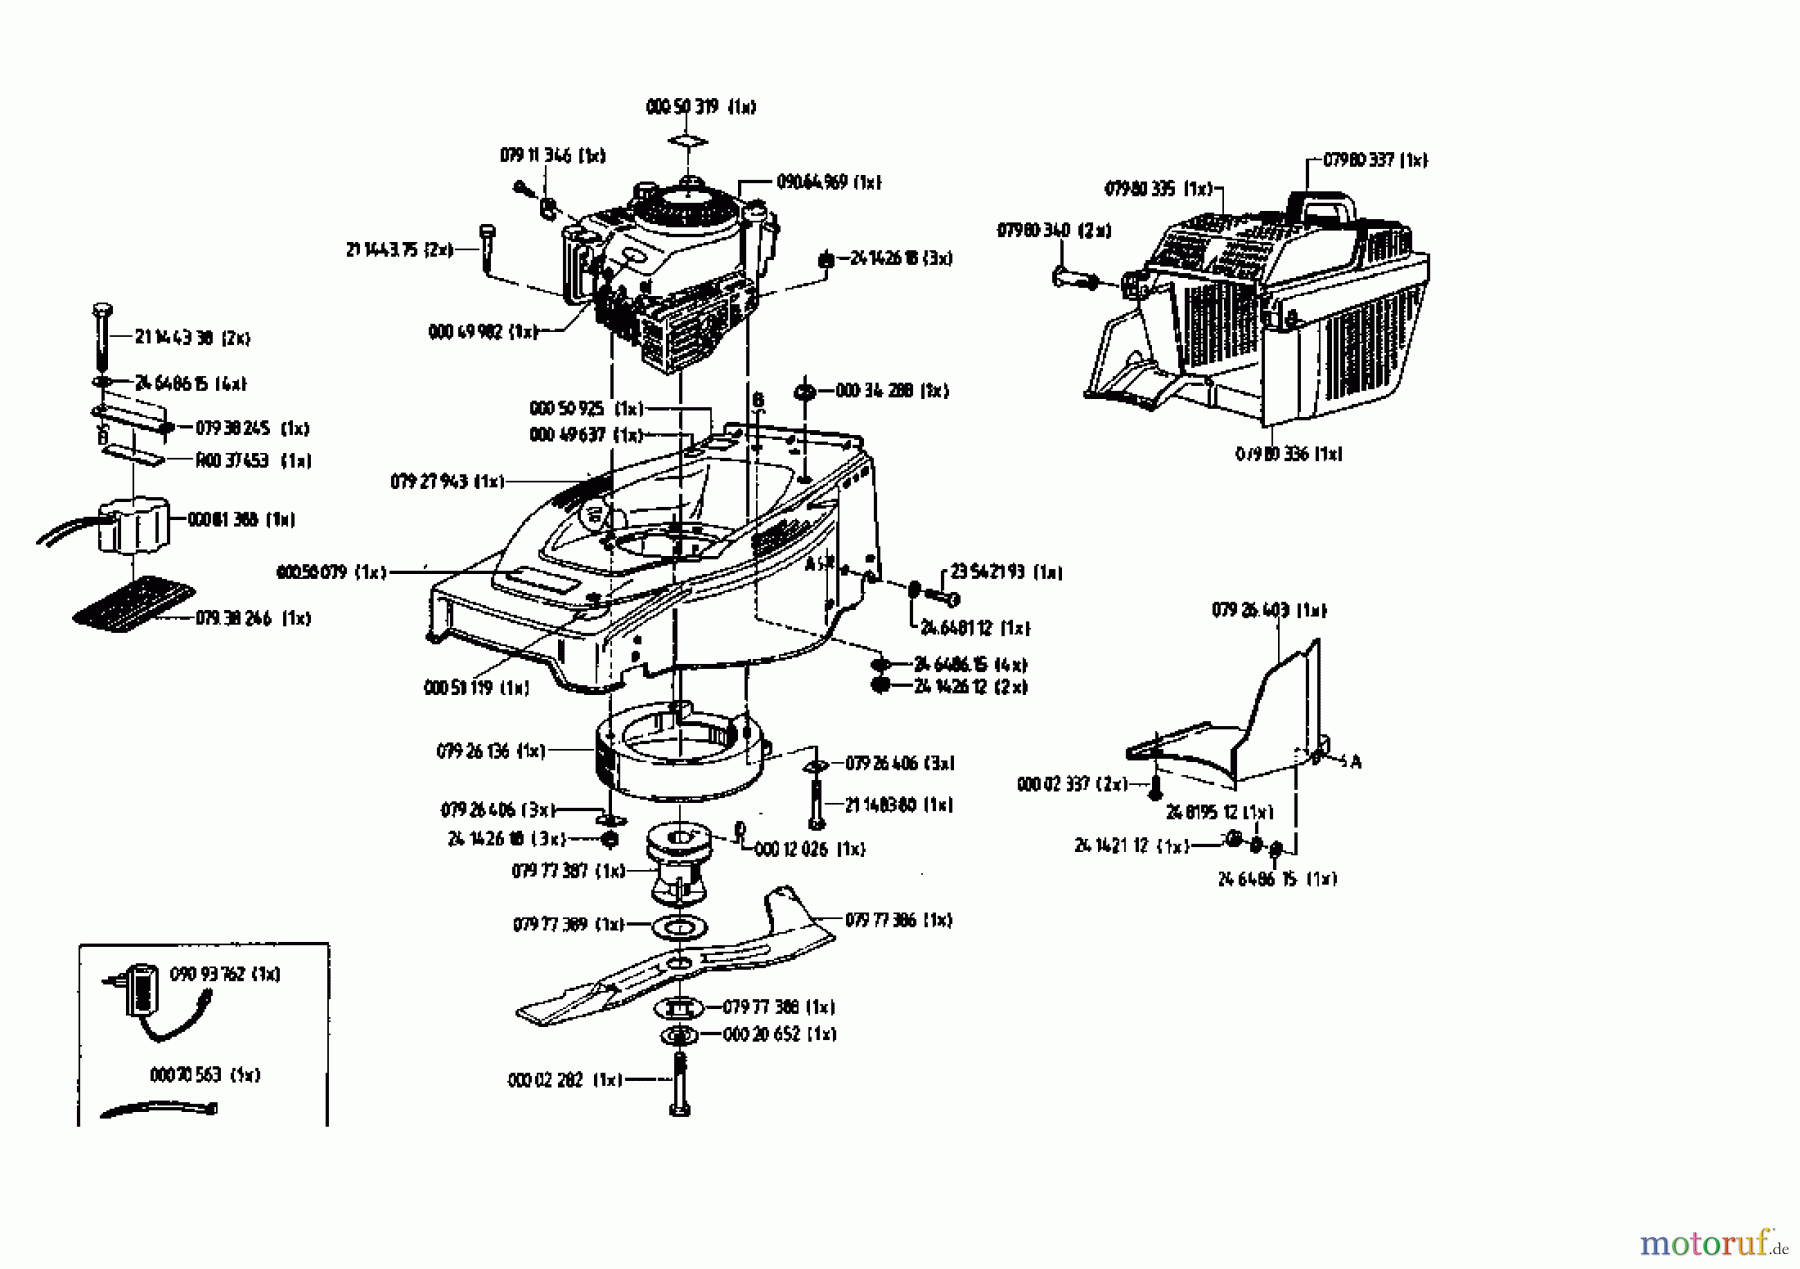  Gutbrod Motormäher mit Antrieb HB 48 REL 02815.02  (1993) Grundgerät